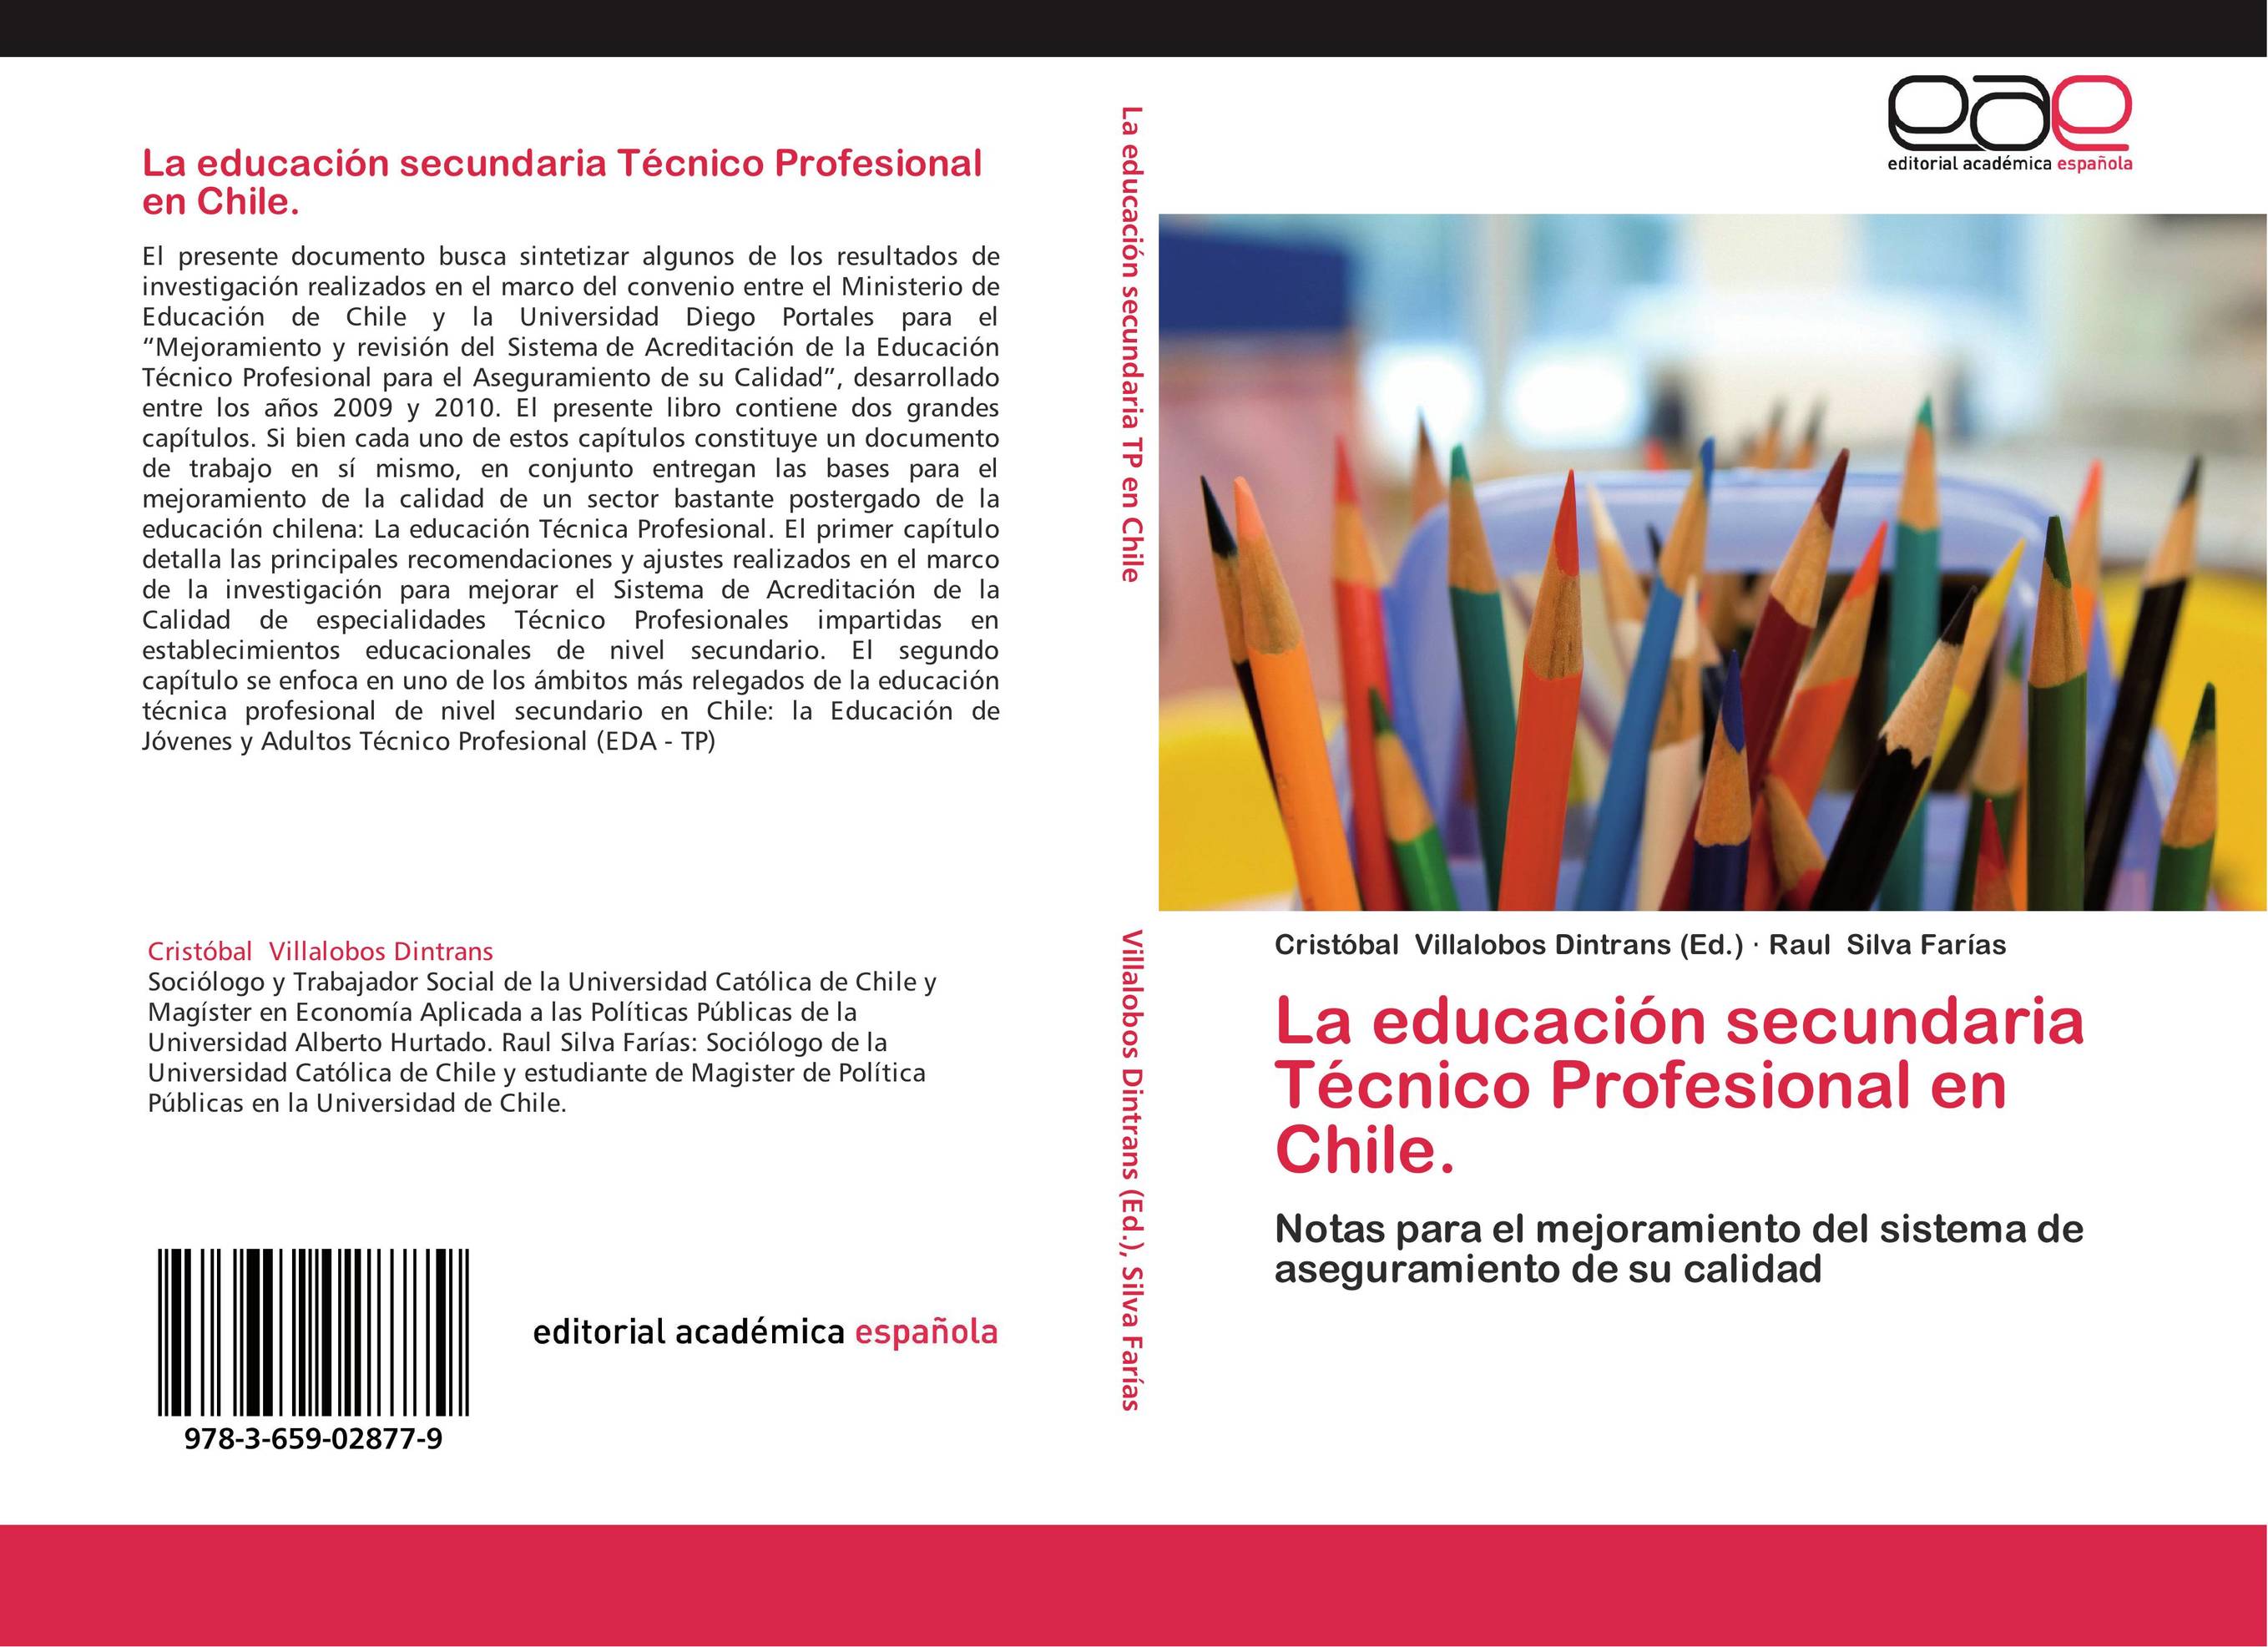 La educación secundaria Técnico Profesional en Chile.